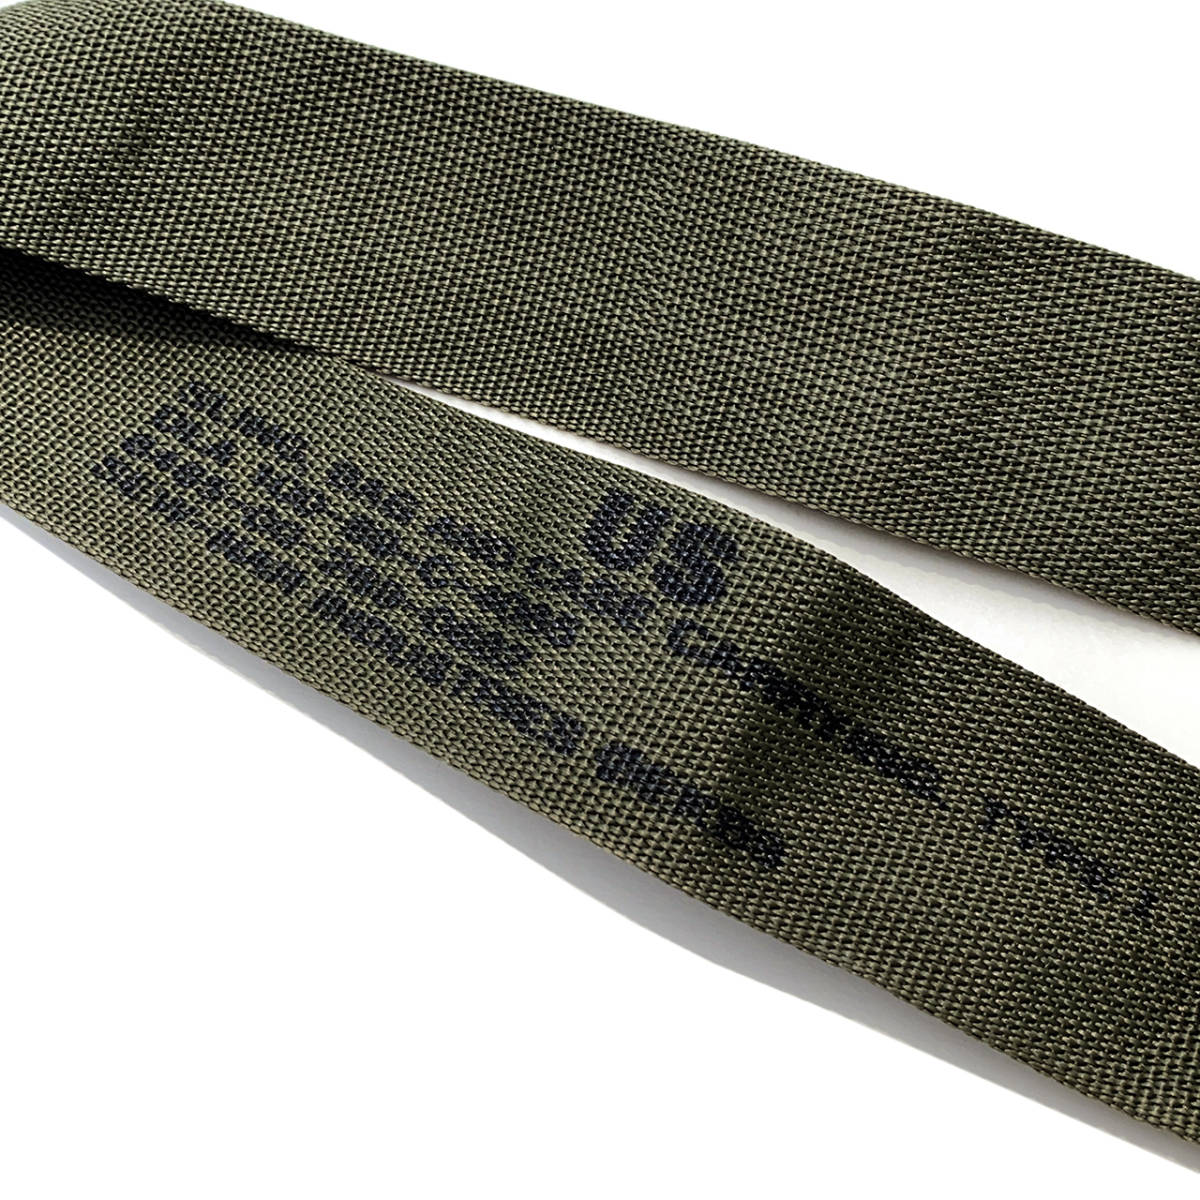 米軍実物ショルダーストラップ OD 2インチ 官給品バッグ ショルダー ストラップ スリング SLING オリーブ デッドストックミリタリー軍物_画像3